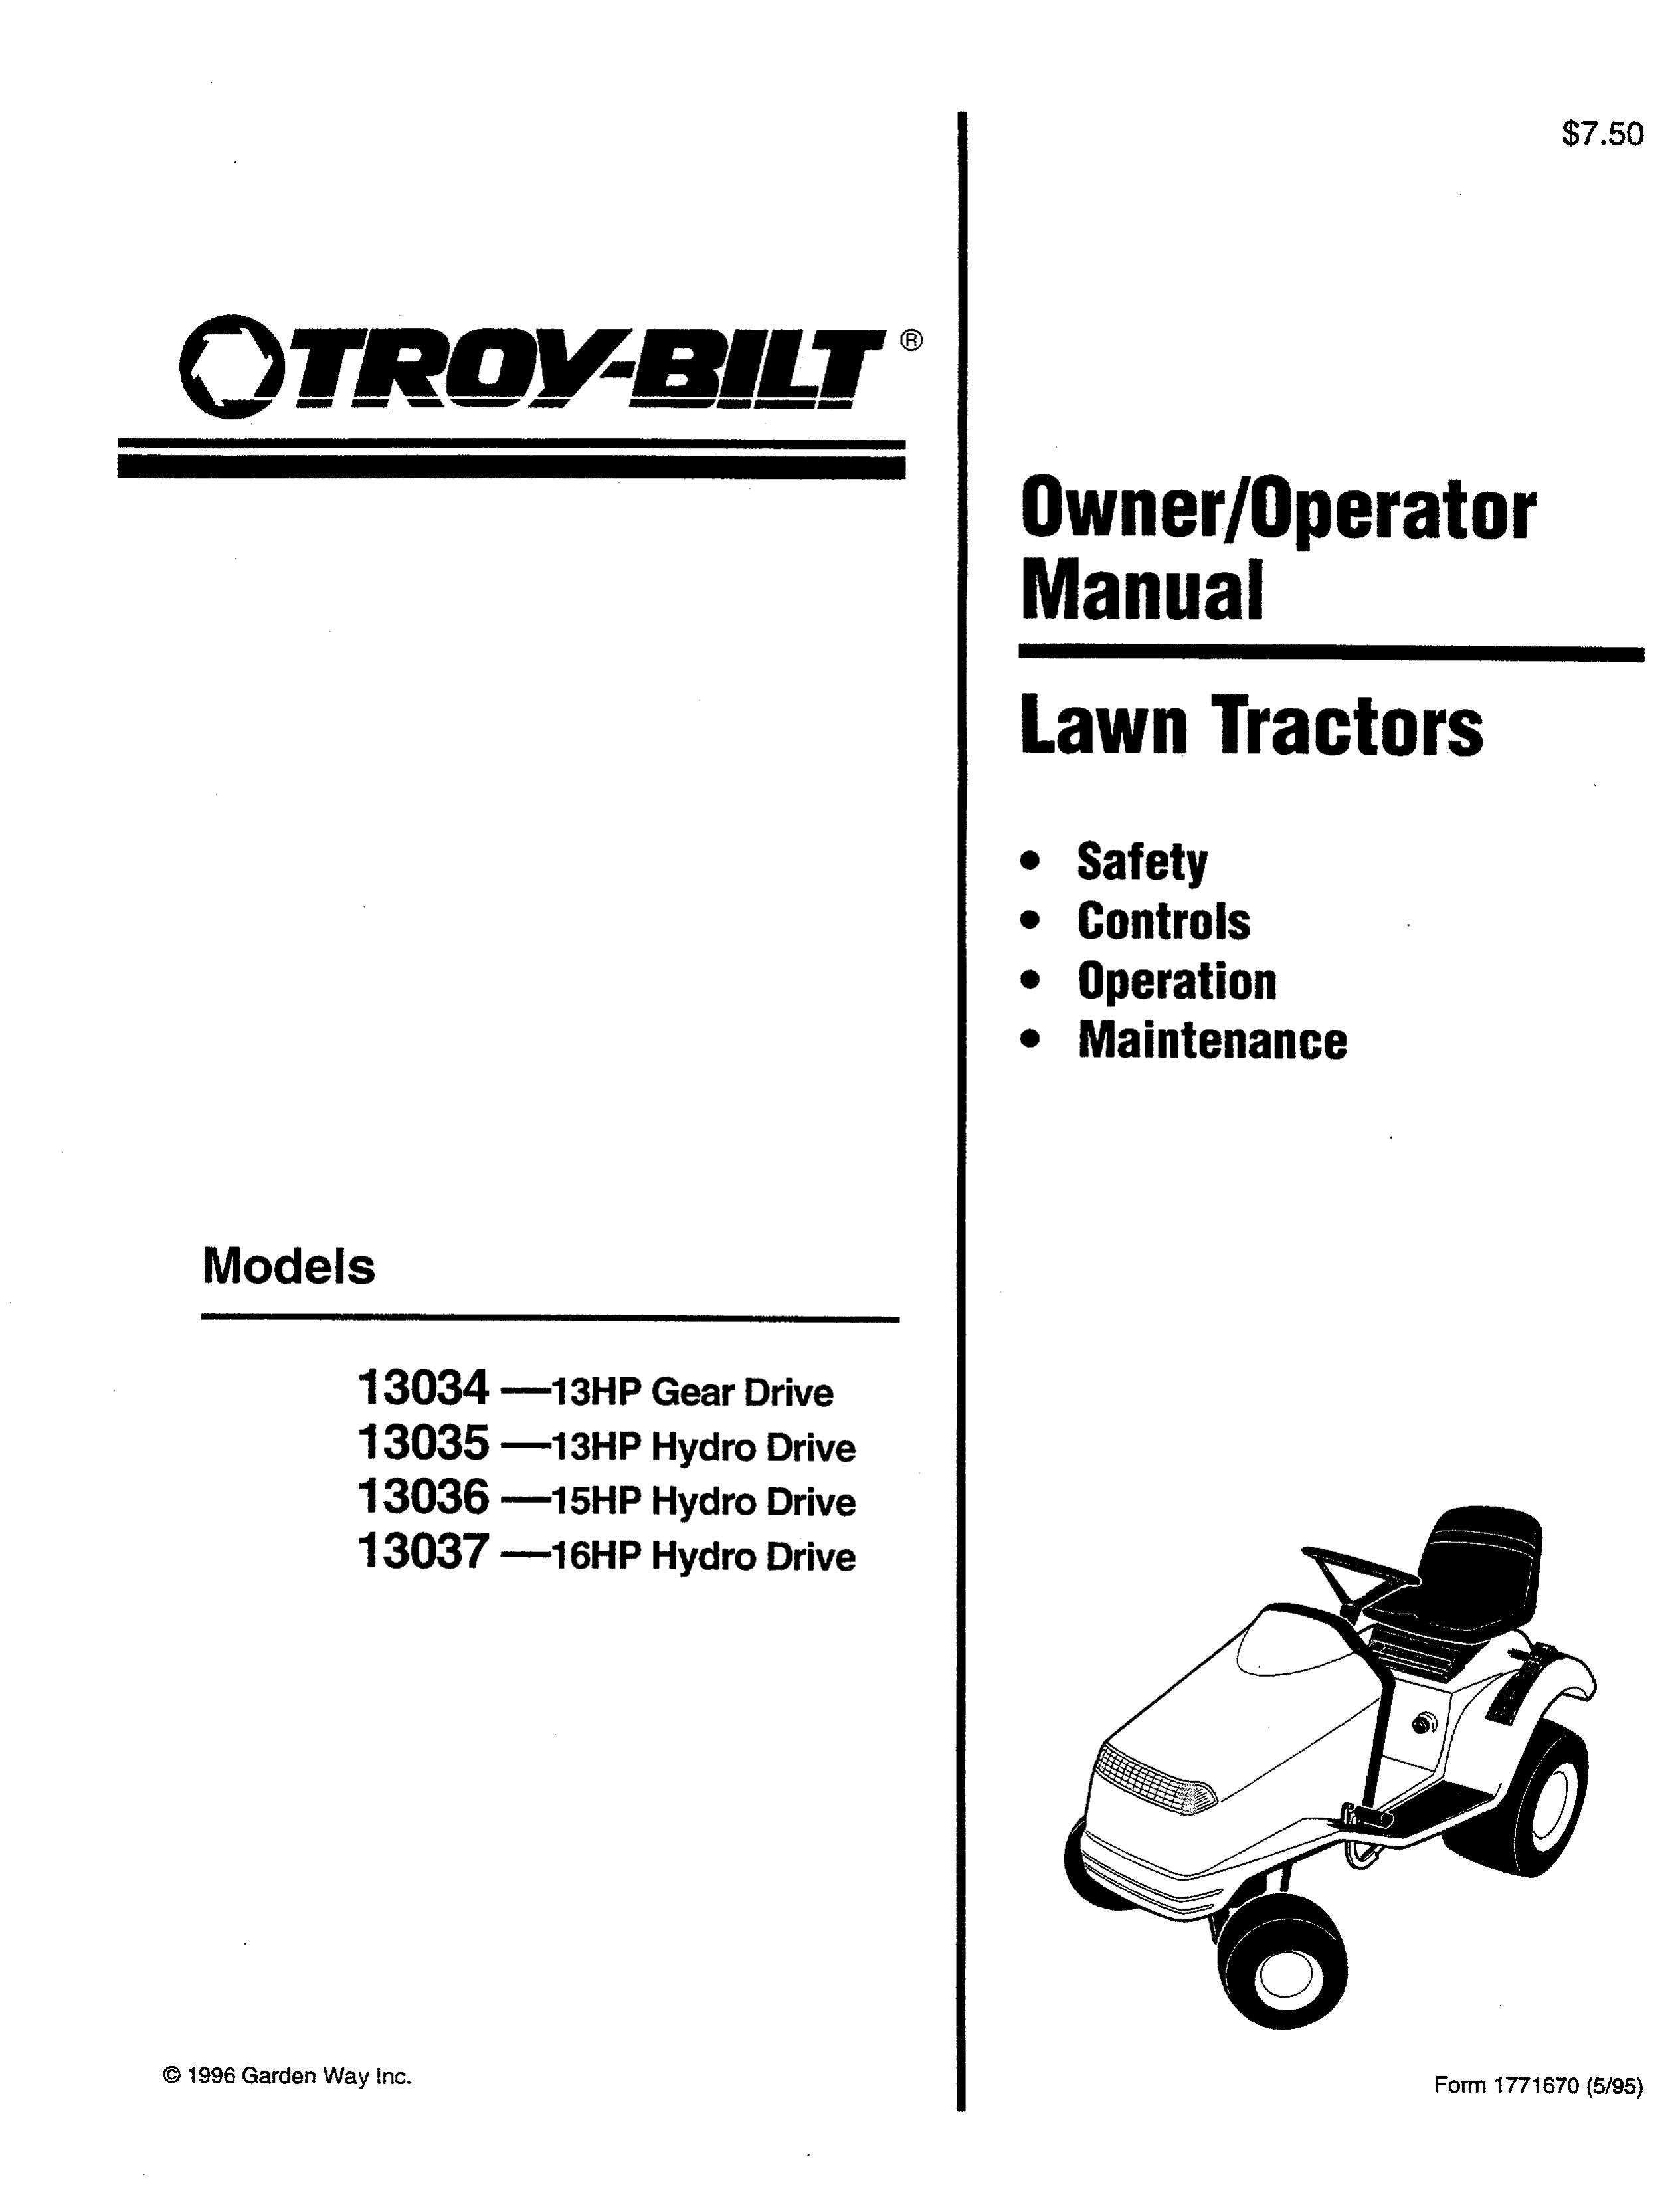 Troy-Bilt 13035 Lawn Mower User Manual